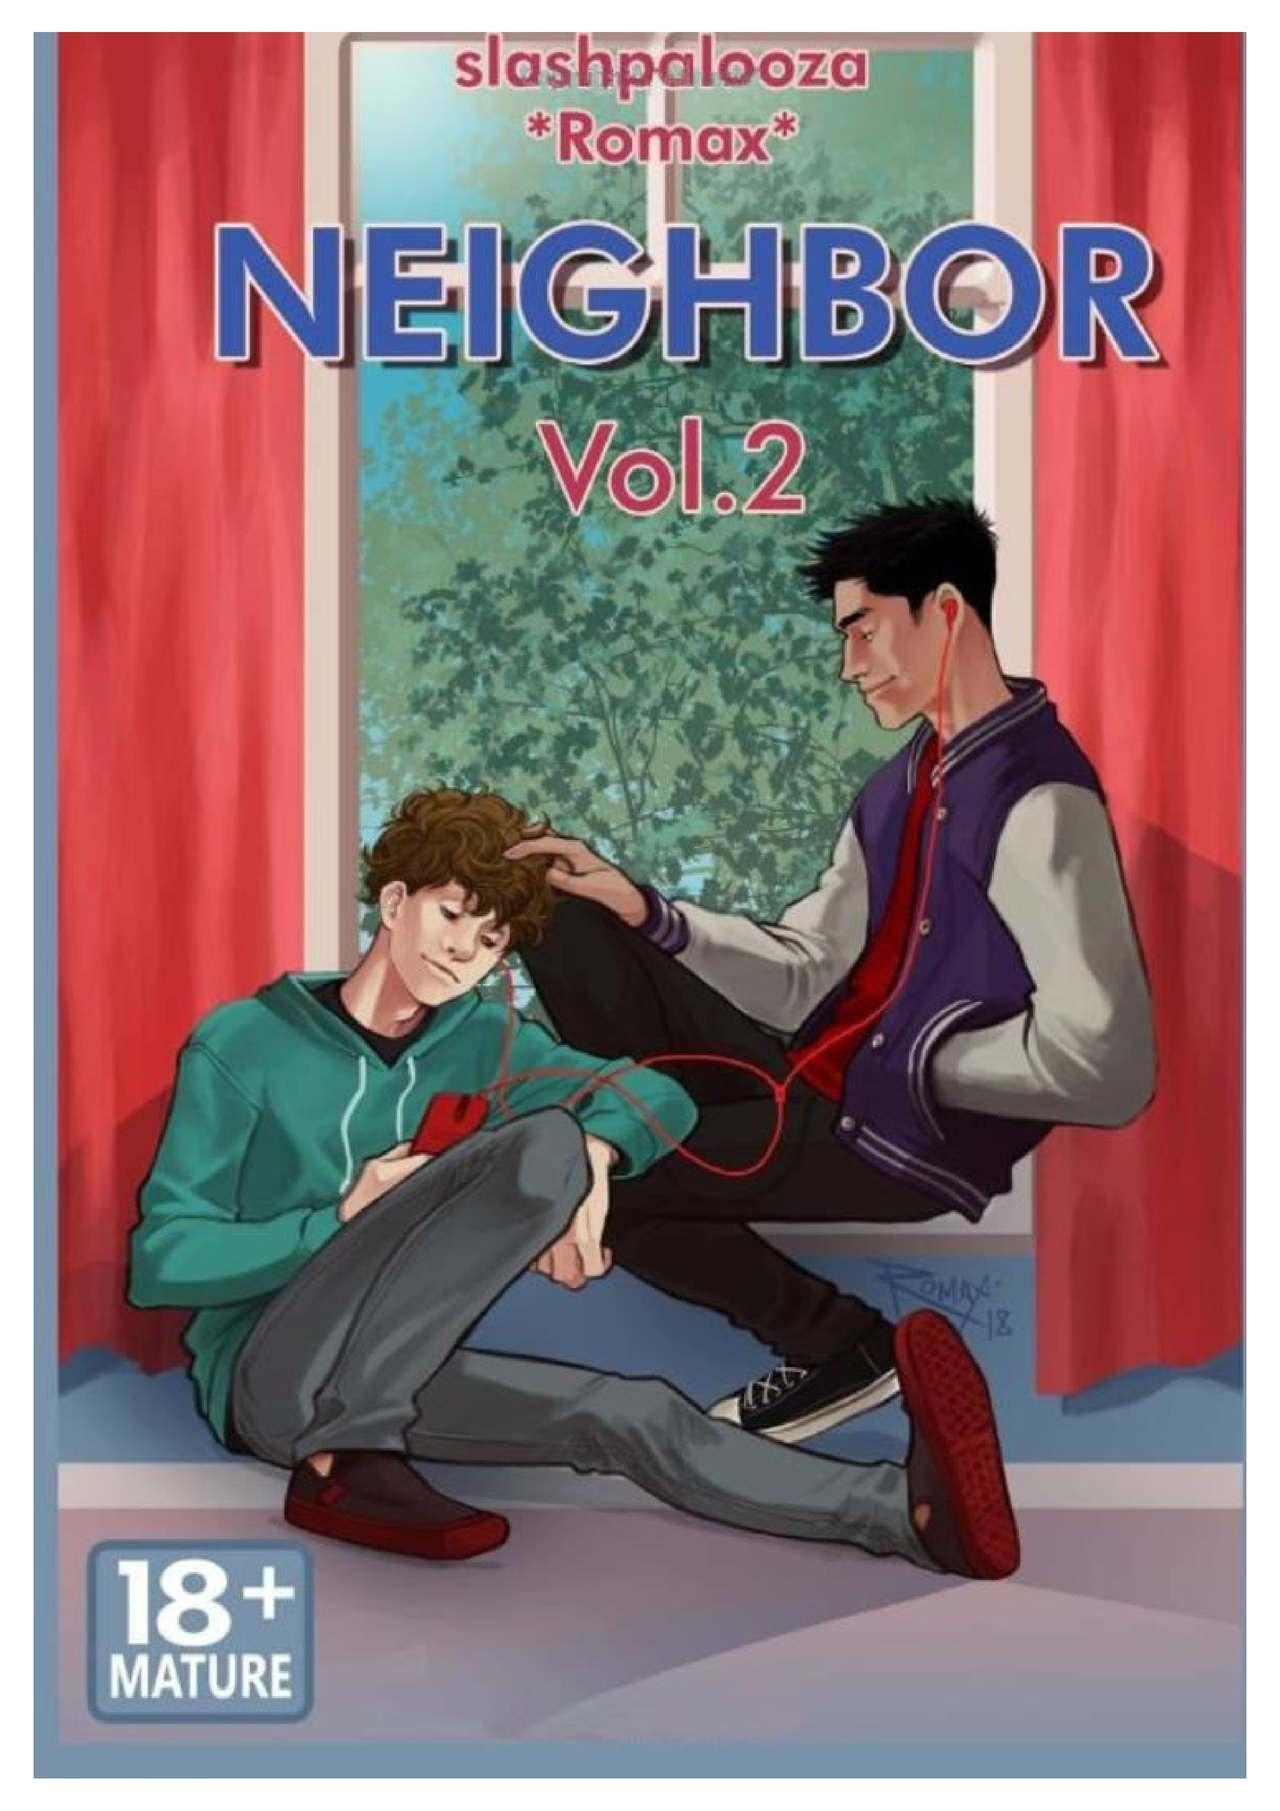 Neighbor Volume 2 by Slashpalooza 0